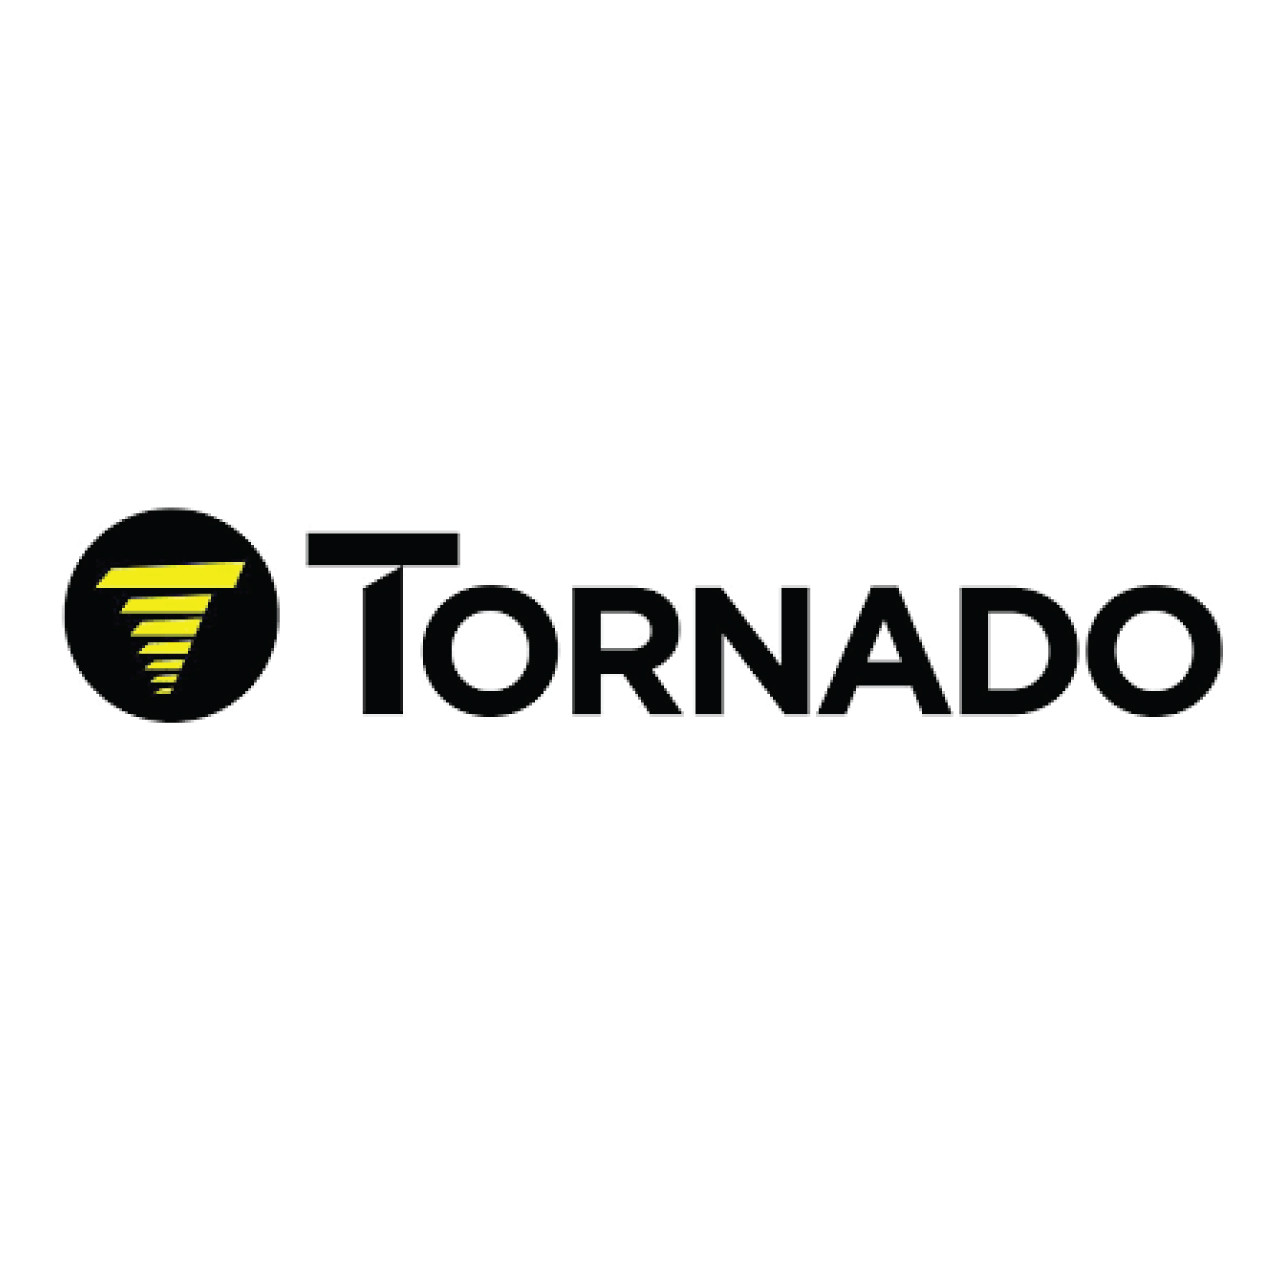 02-4193-0000, Tornado 02-4193-0000, Tornado BELT 1367 X 30mm NITTA LA500 (BLUE/BLUE) (TOLERANCE +3/-4), Tornado parts